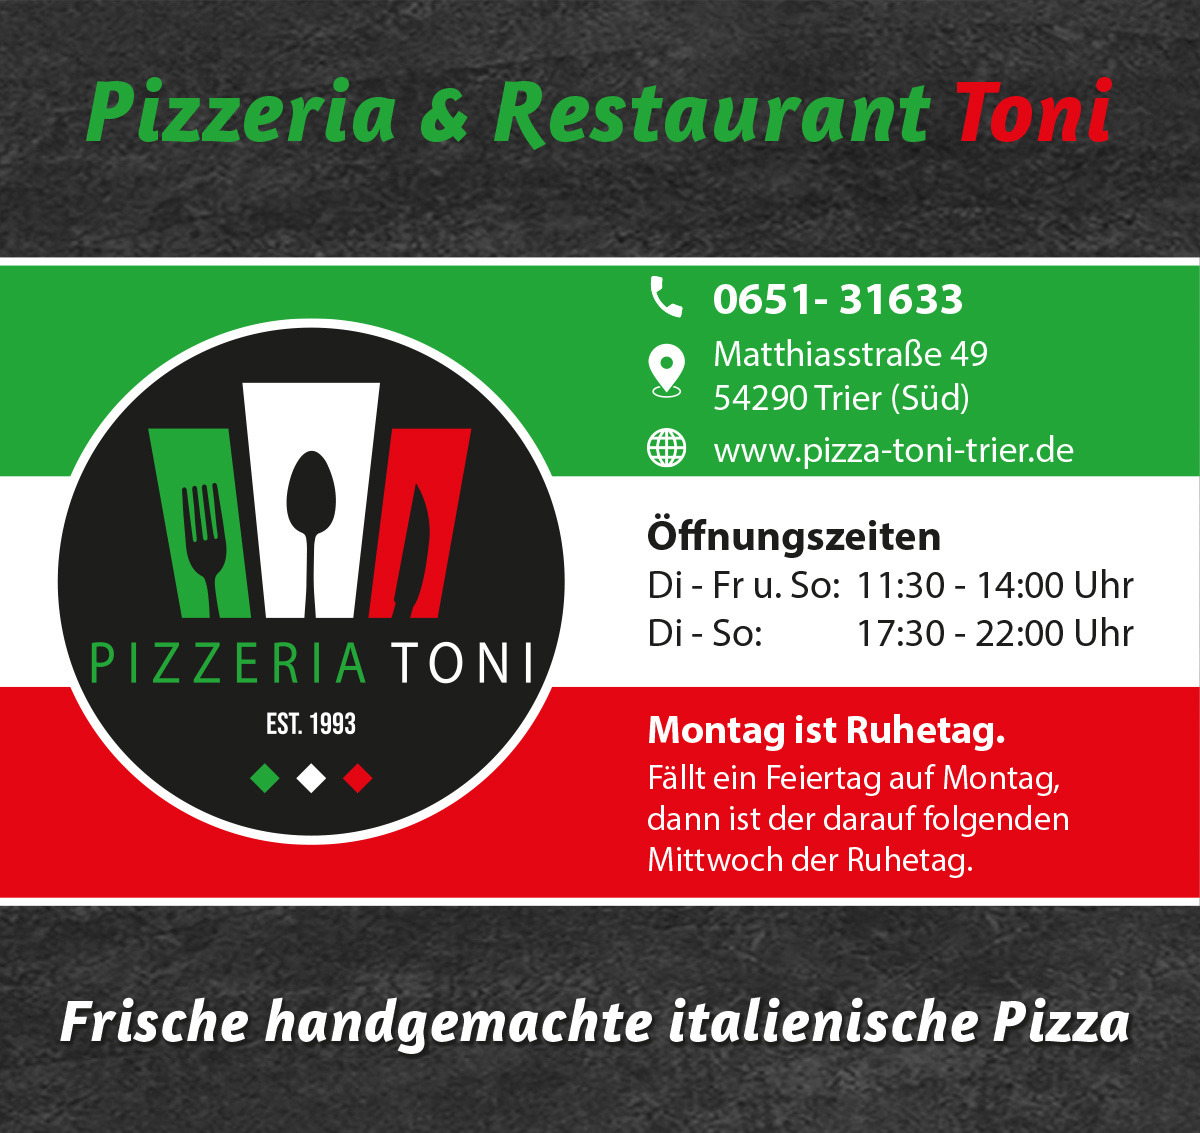 Pizzeria & Restaurant Toni